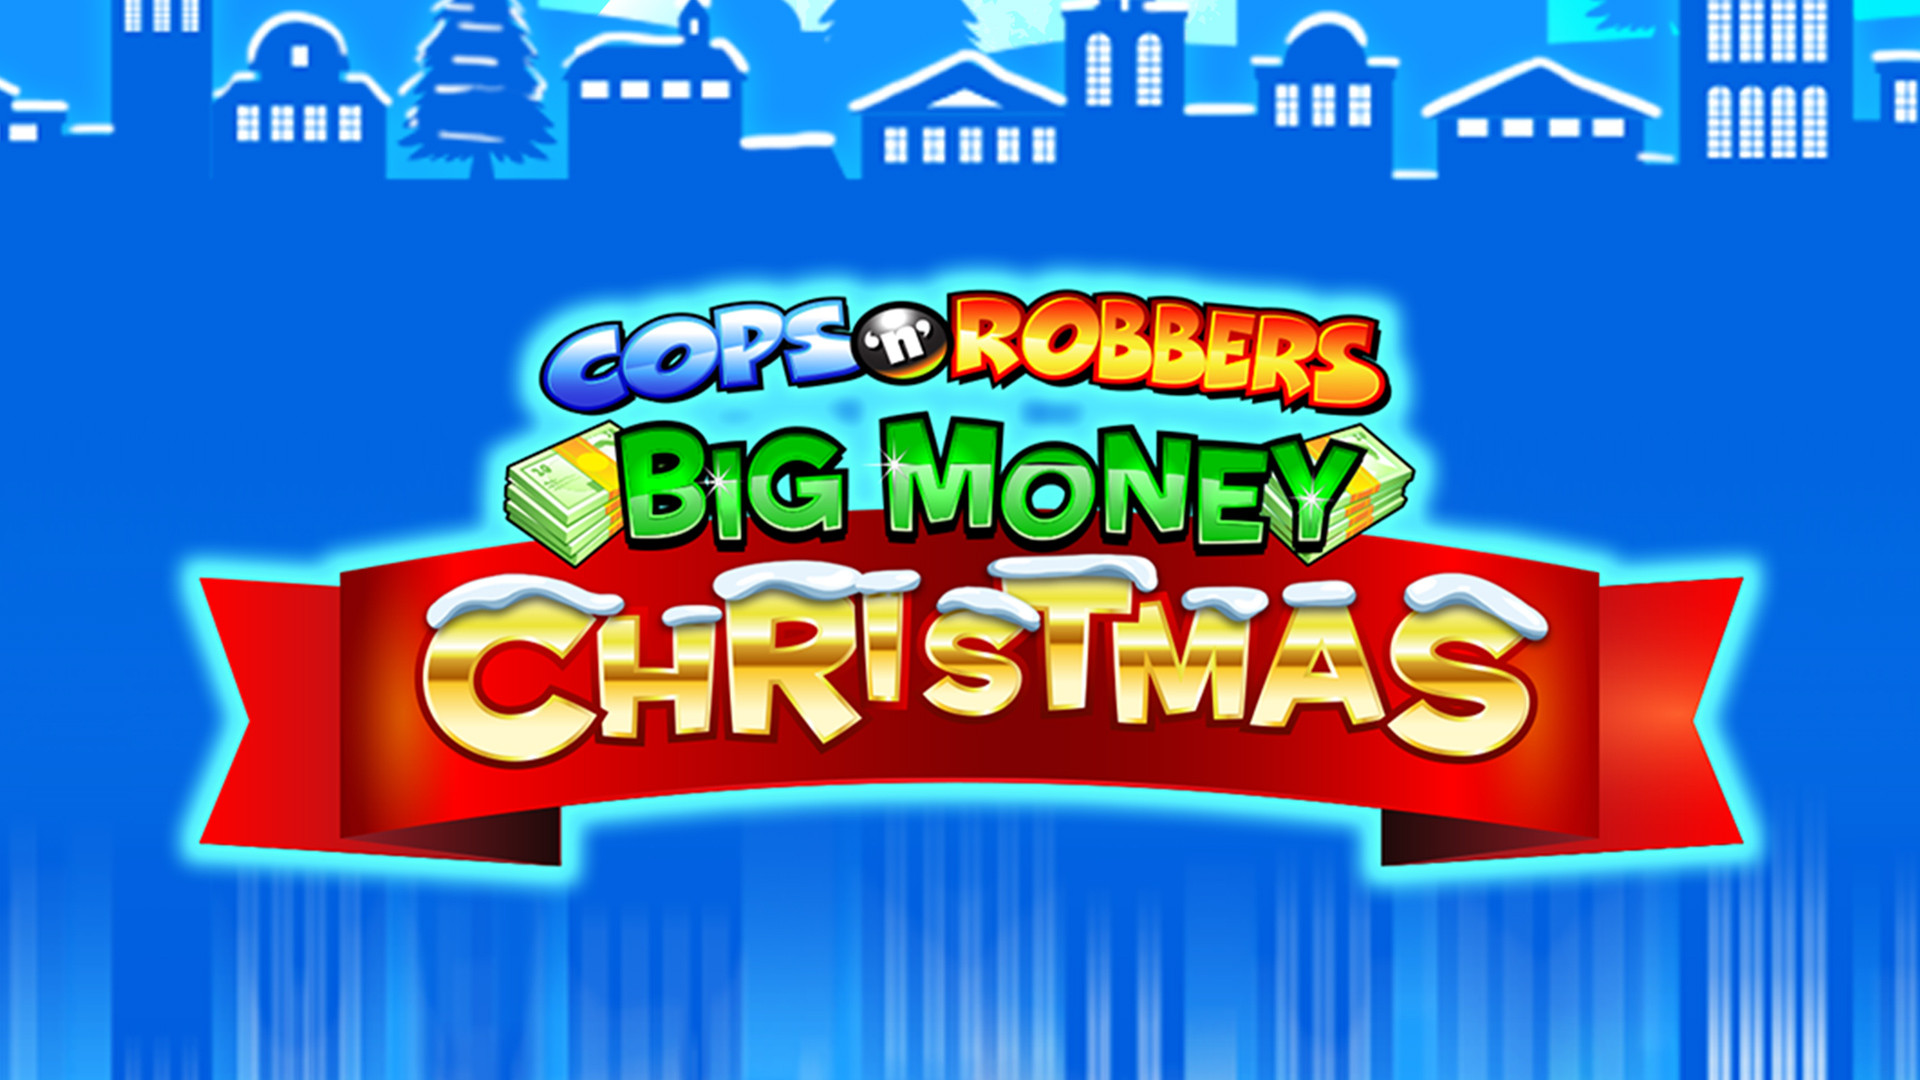 Cops 'N' Robbers Big Money Christmas